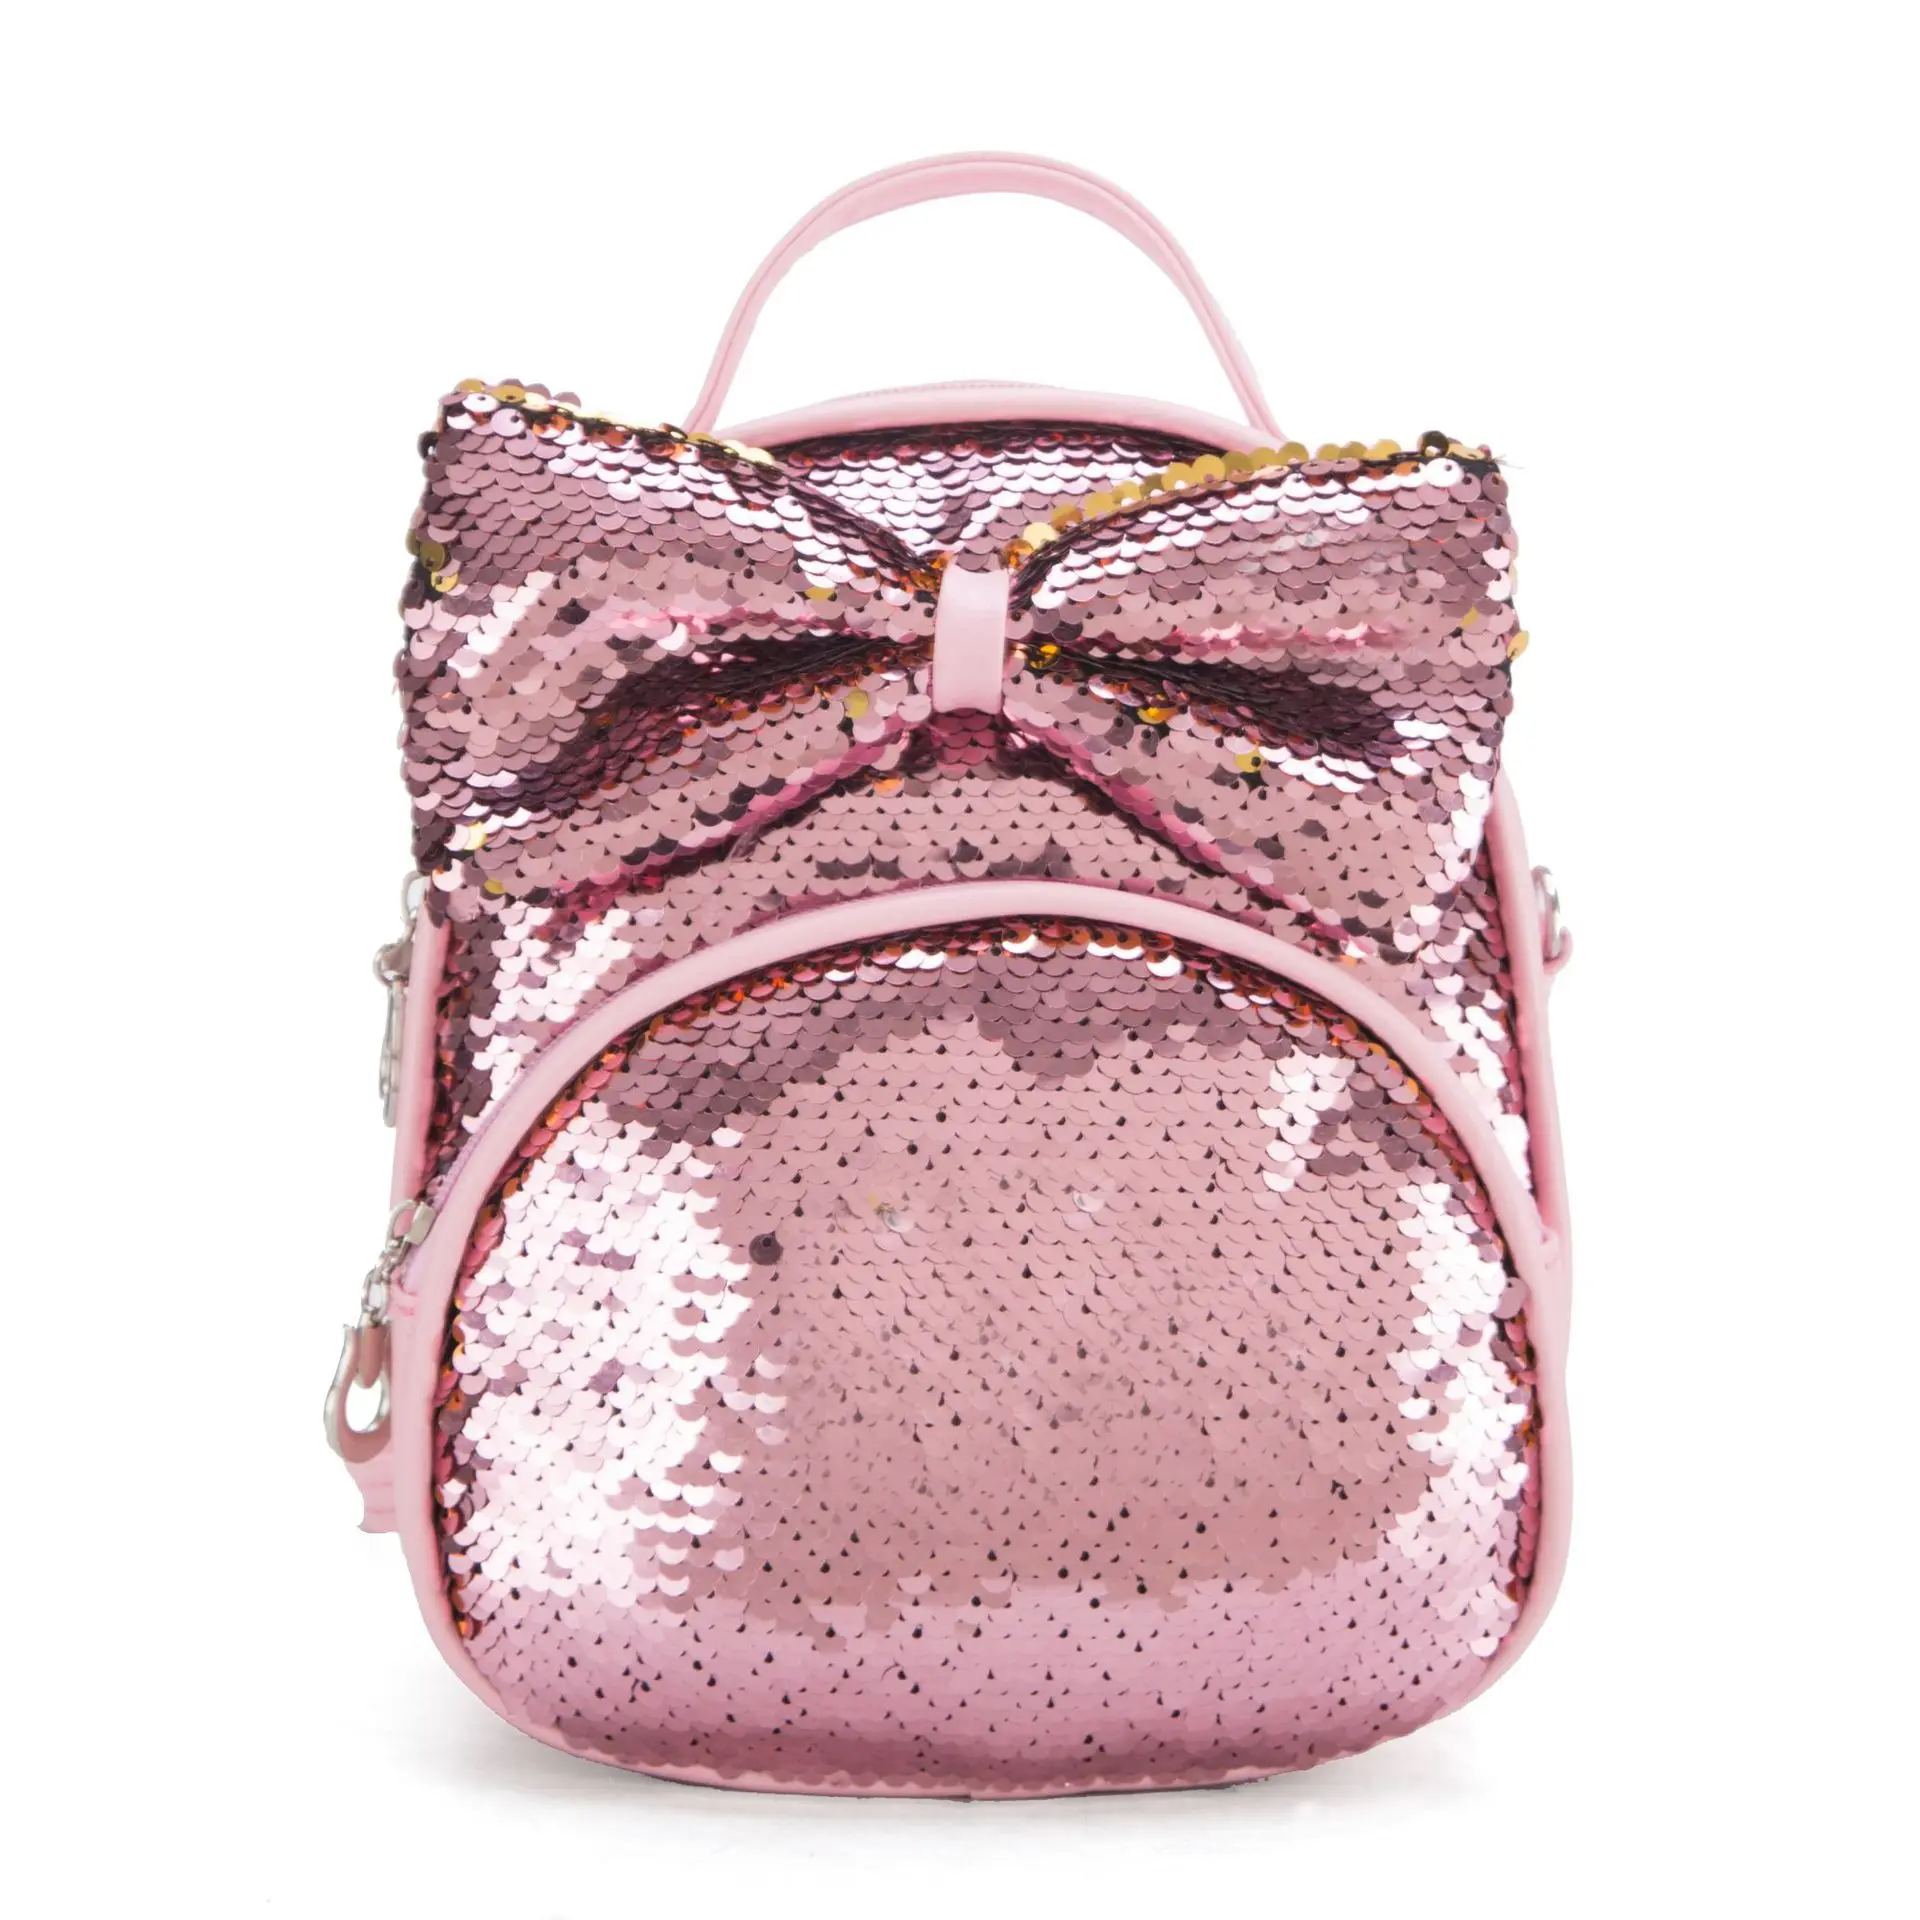 LXFZQ, розовый рюкзак для маленьких девочек, школьные ранцы для детей, школьная сумка, школьный рюкзак, Детская сумка